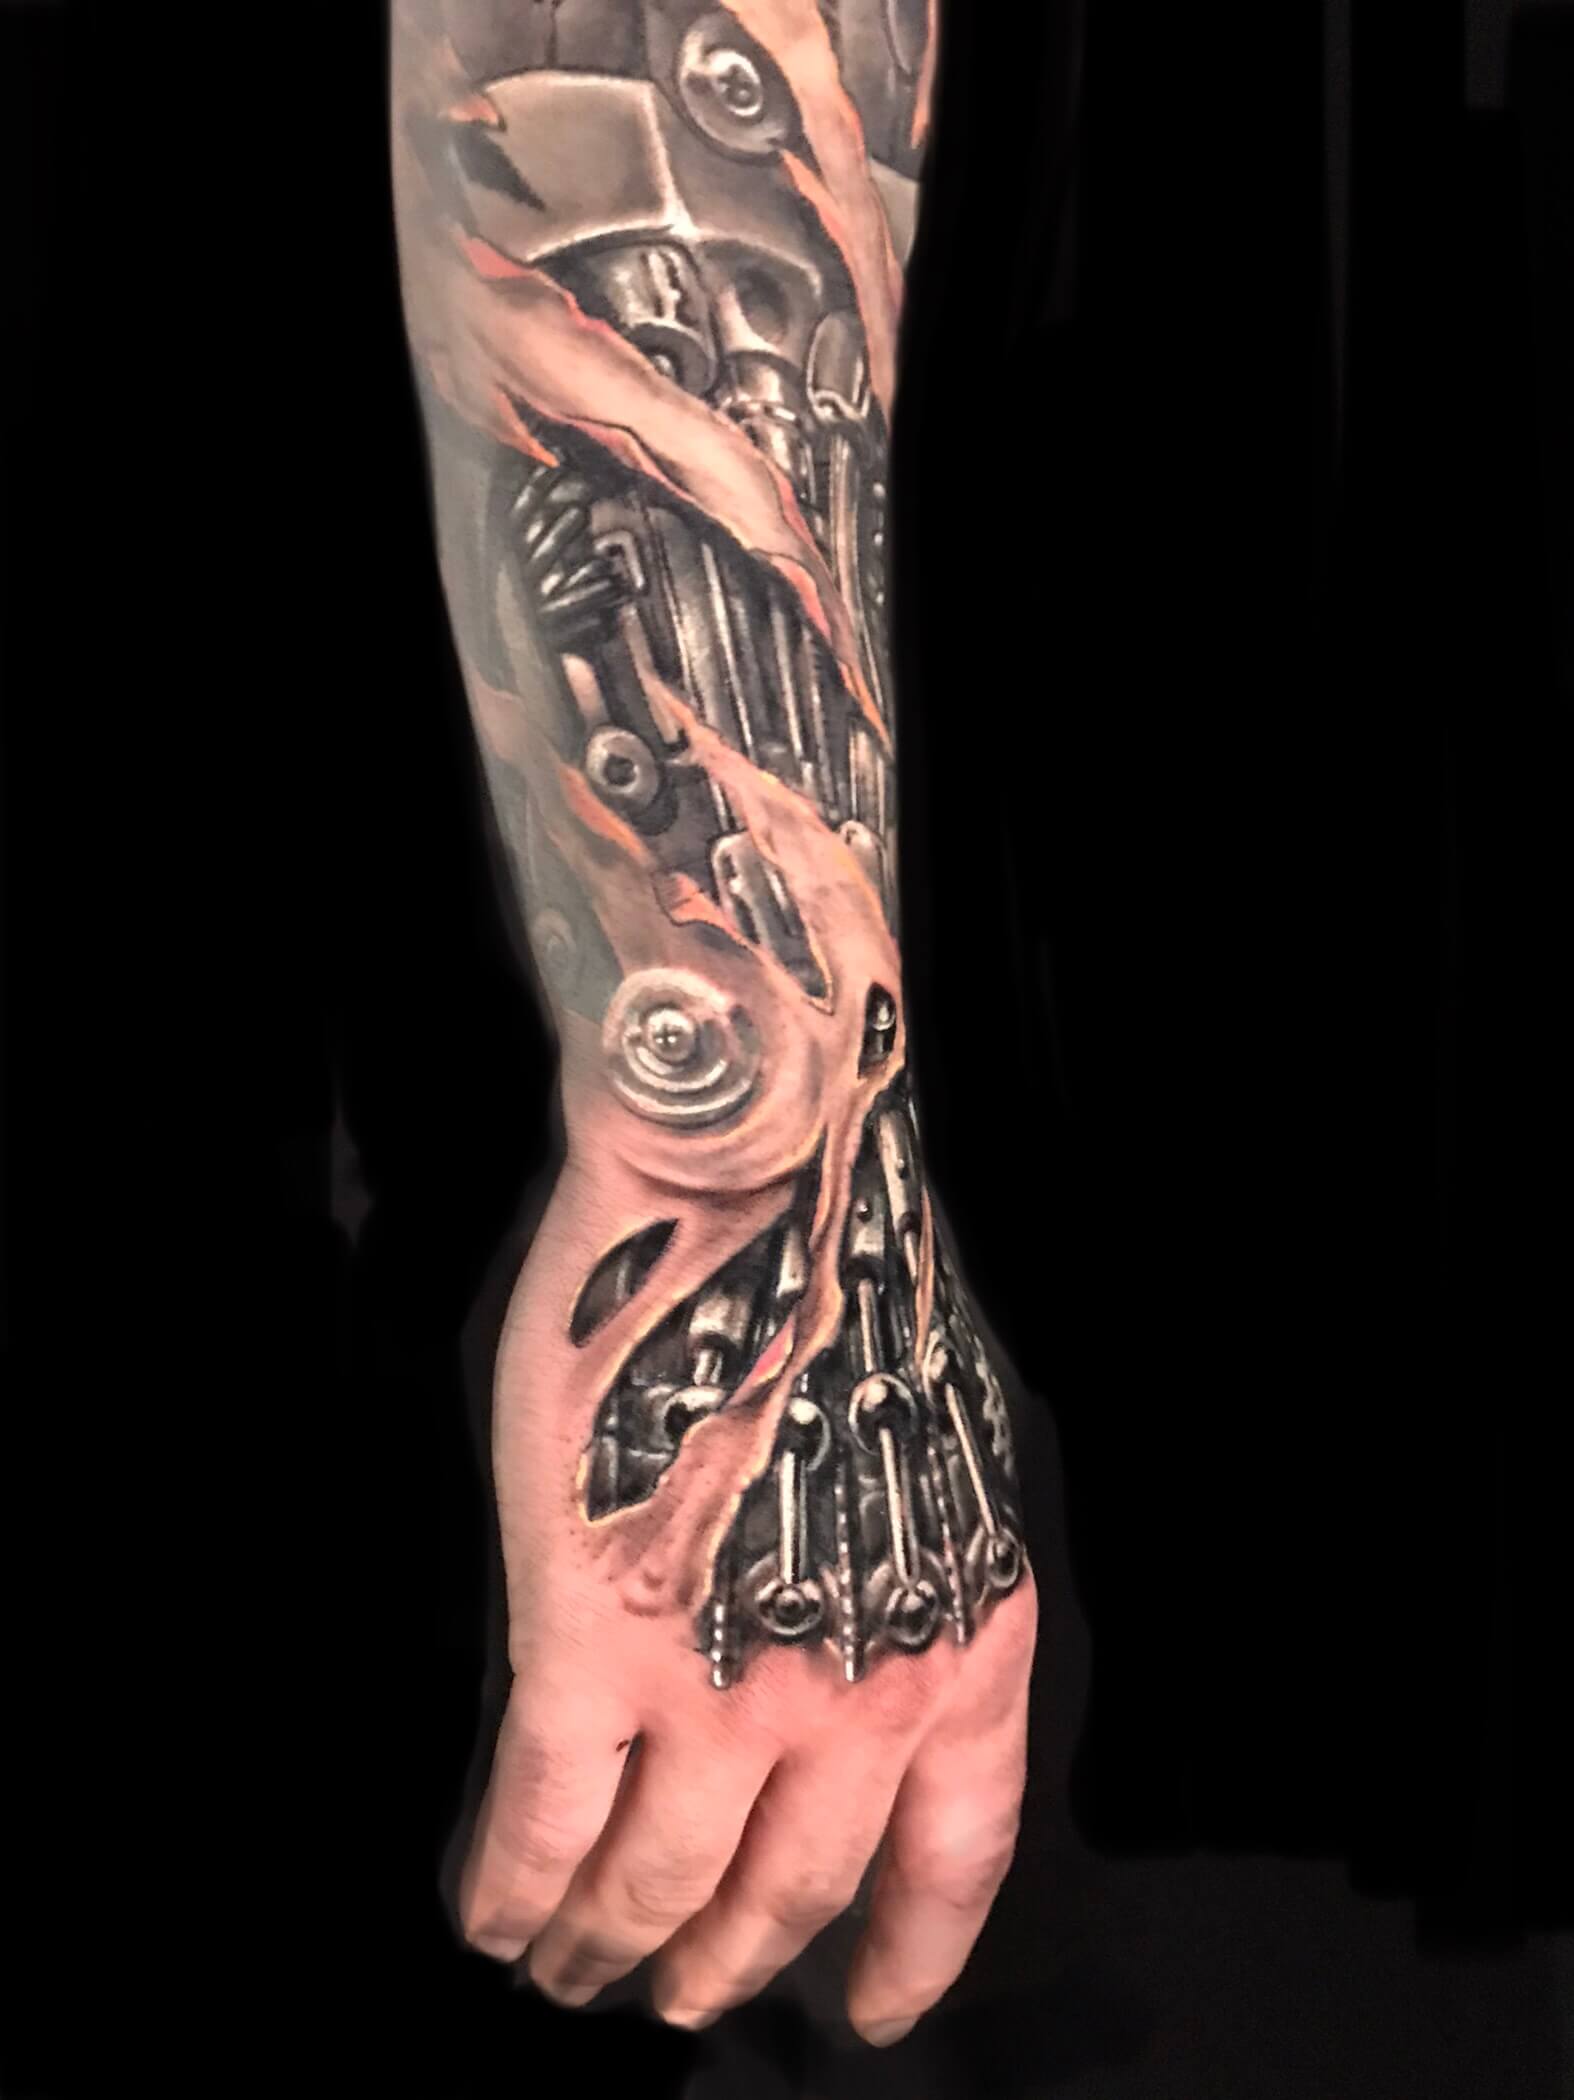 Tatuaje biomecanico en la mano y antebrazo